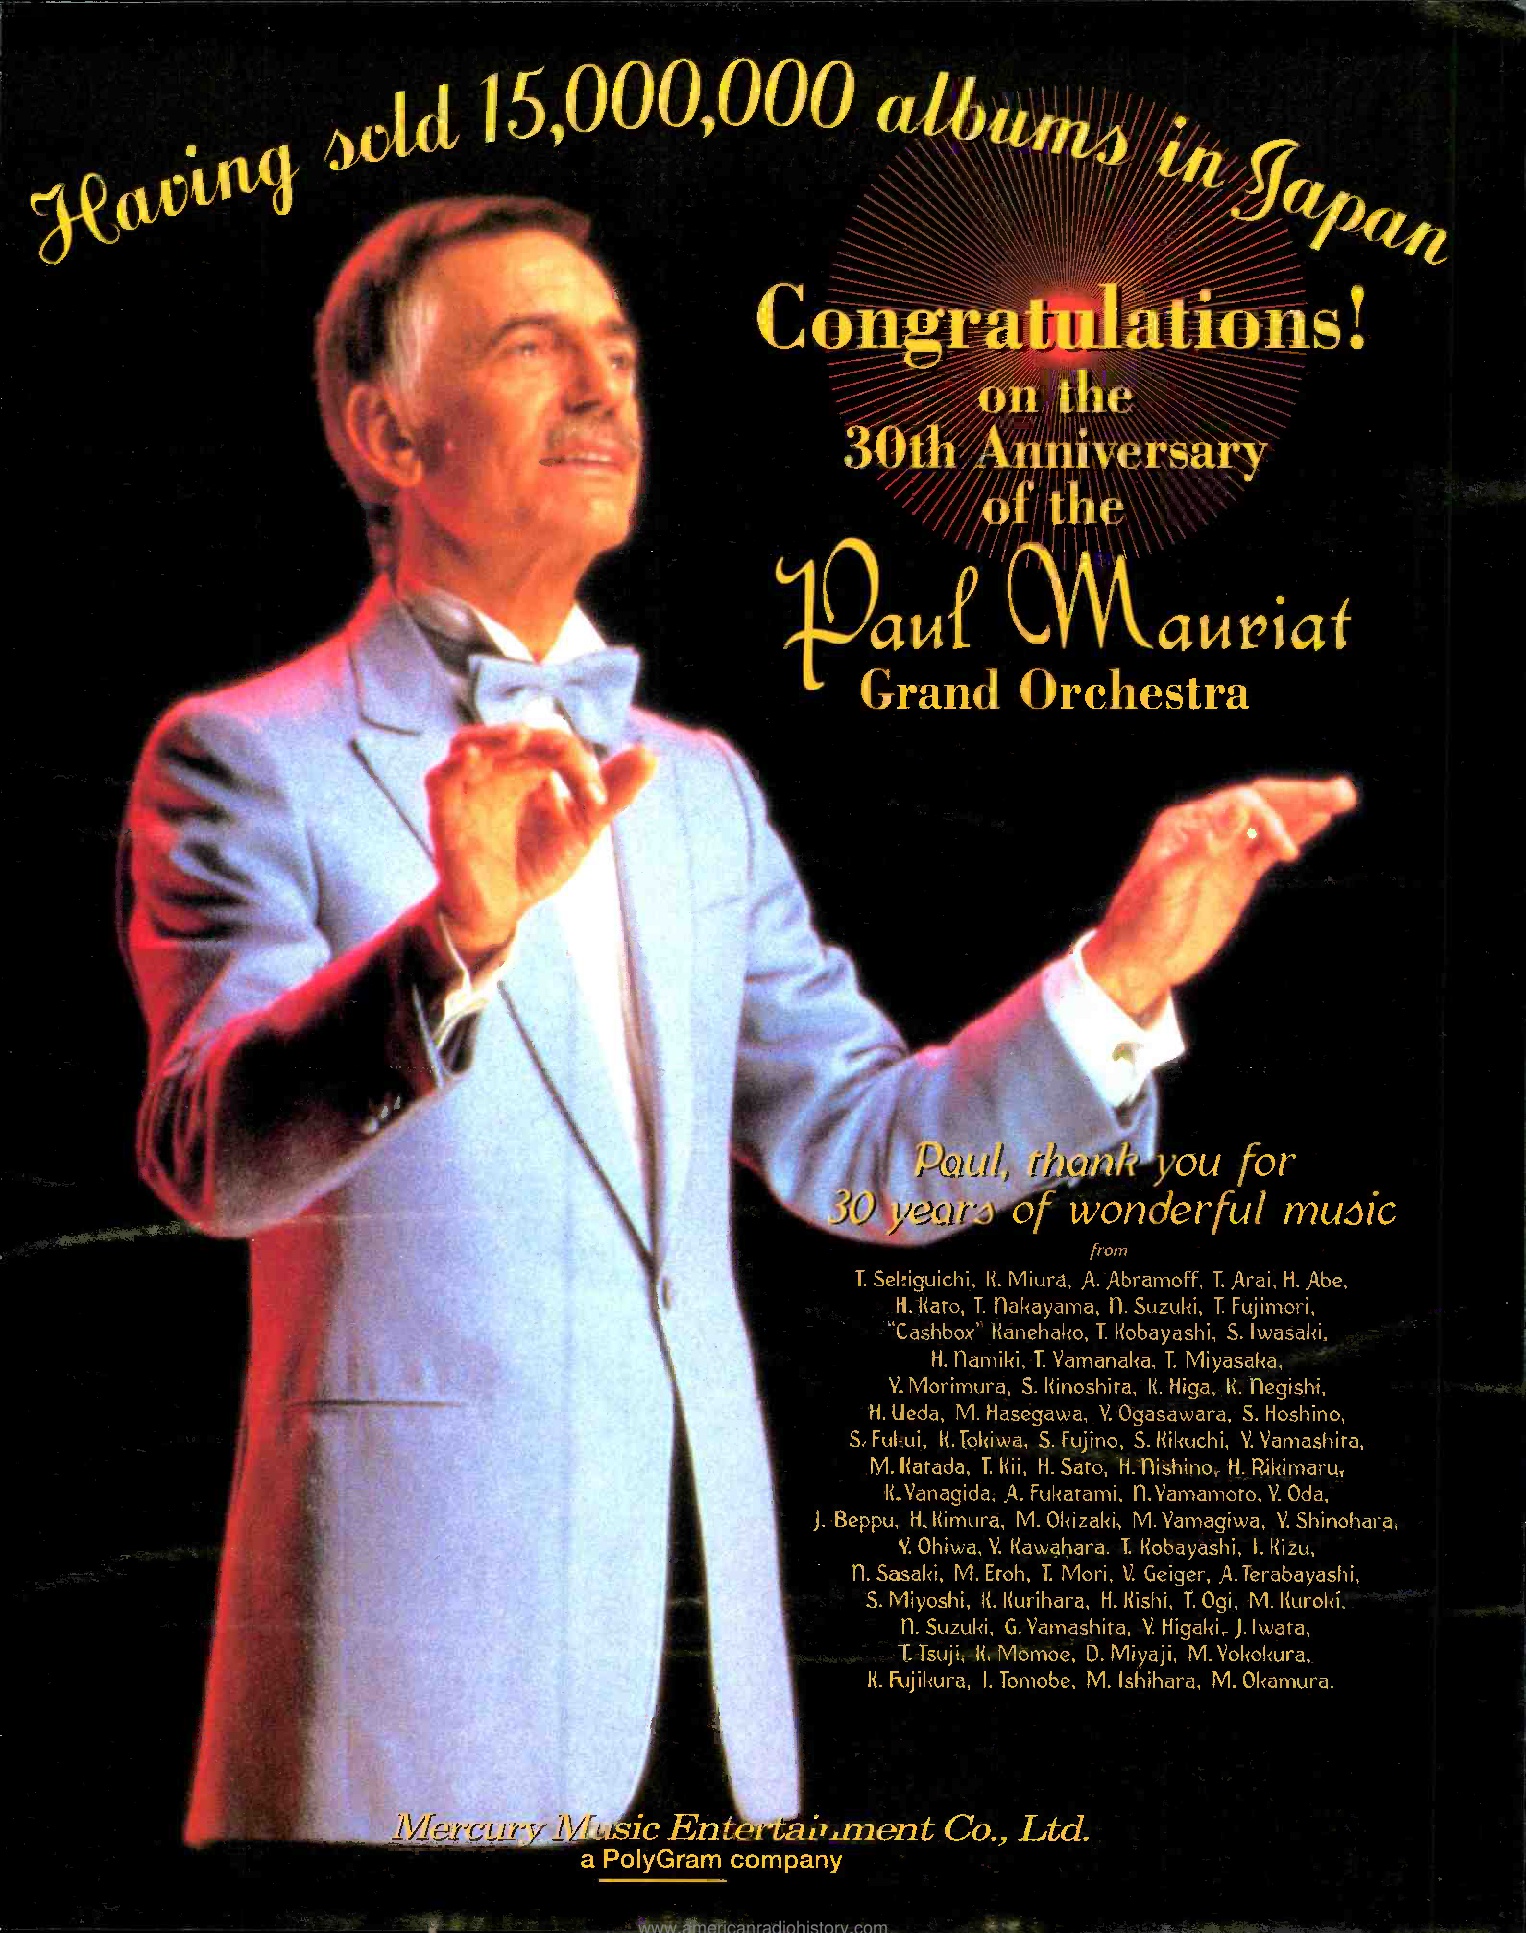 Paul Mauriat flyer japonais. "Congratulations for 15 millions albums sold"